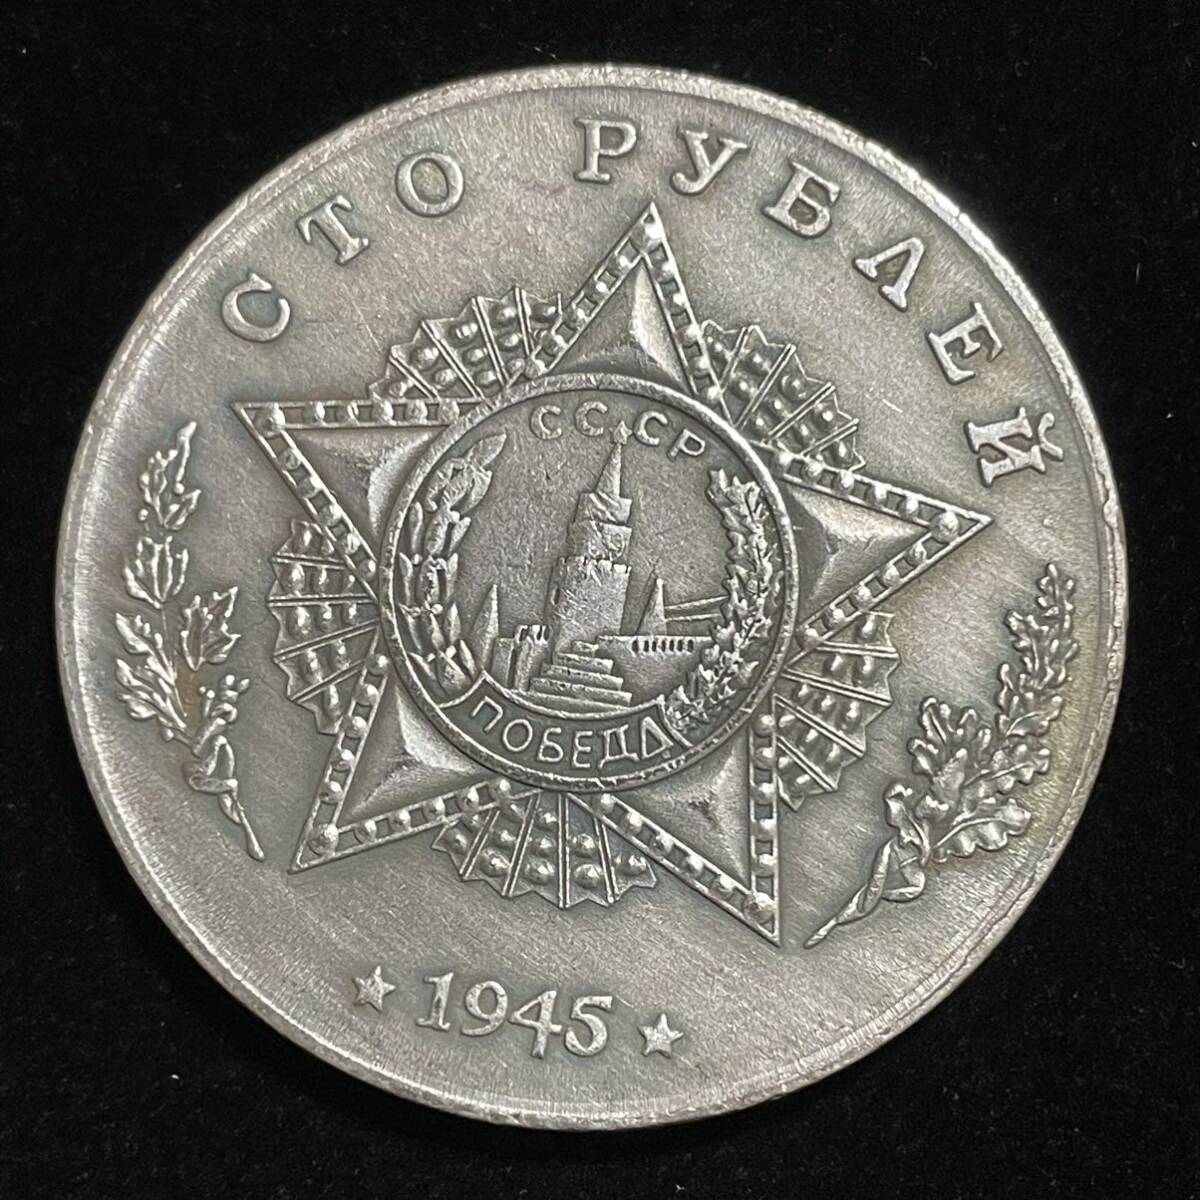 銀貨 硬貨 ロシア ソビエト連邦 戦車 記念幣 T-26 クレムリン宮殿 コレクション コイン 古銭 の画像2